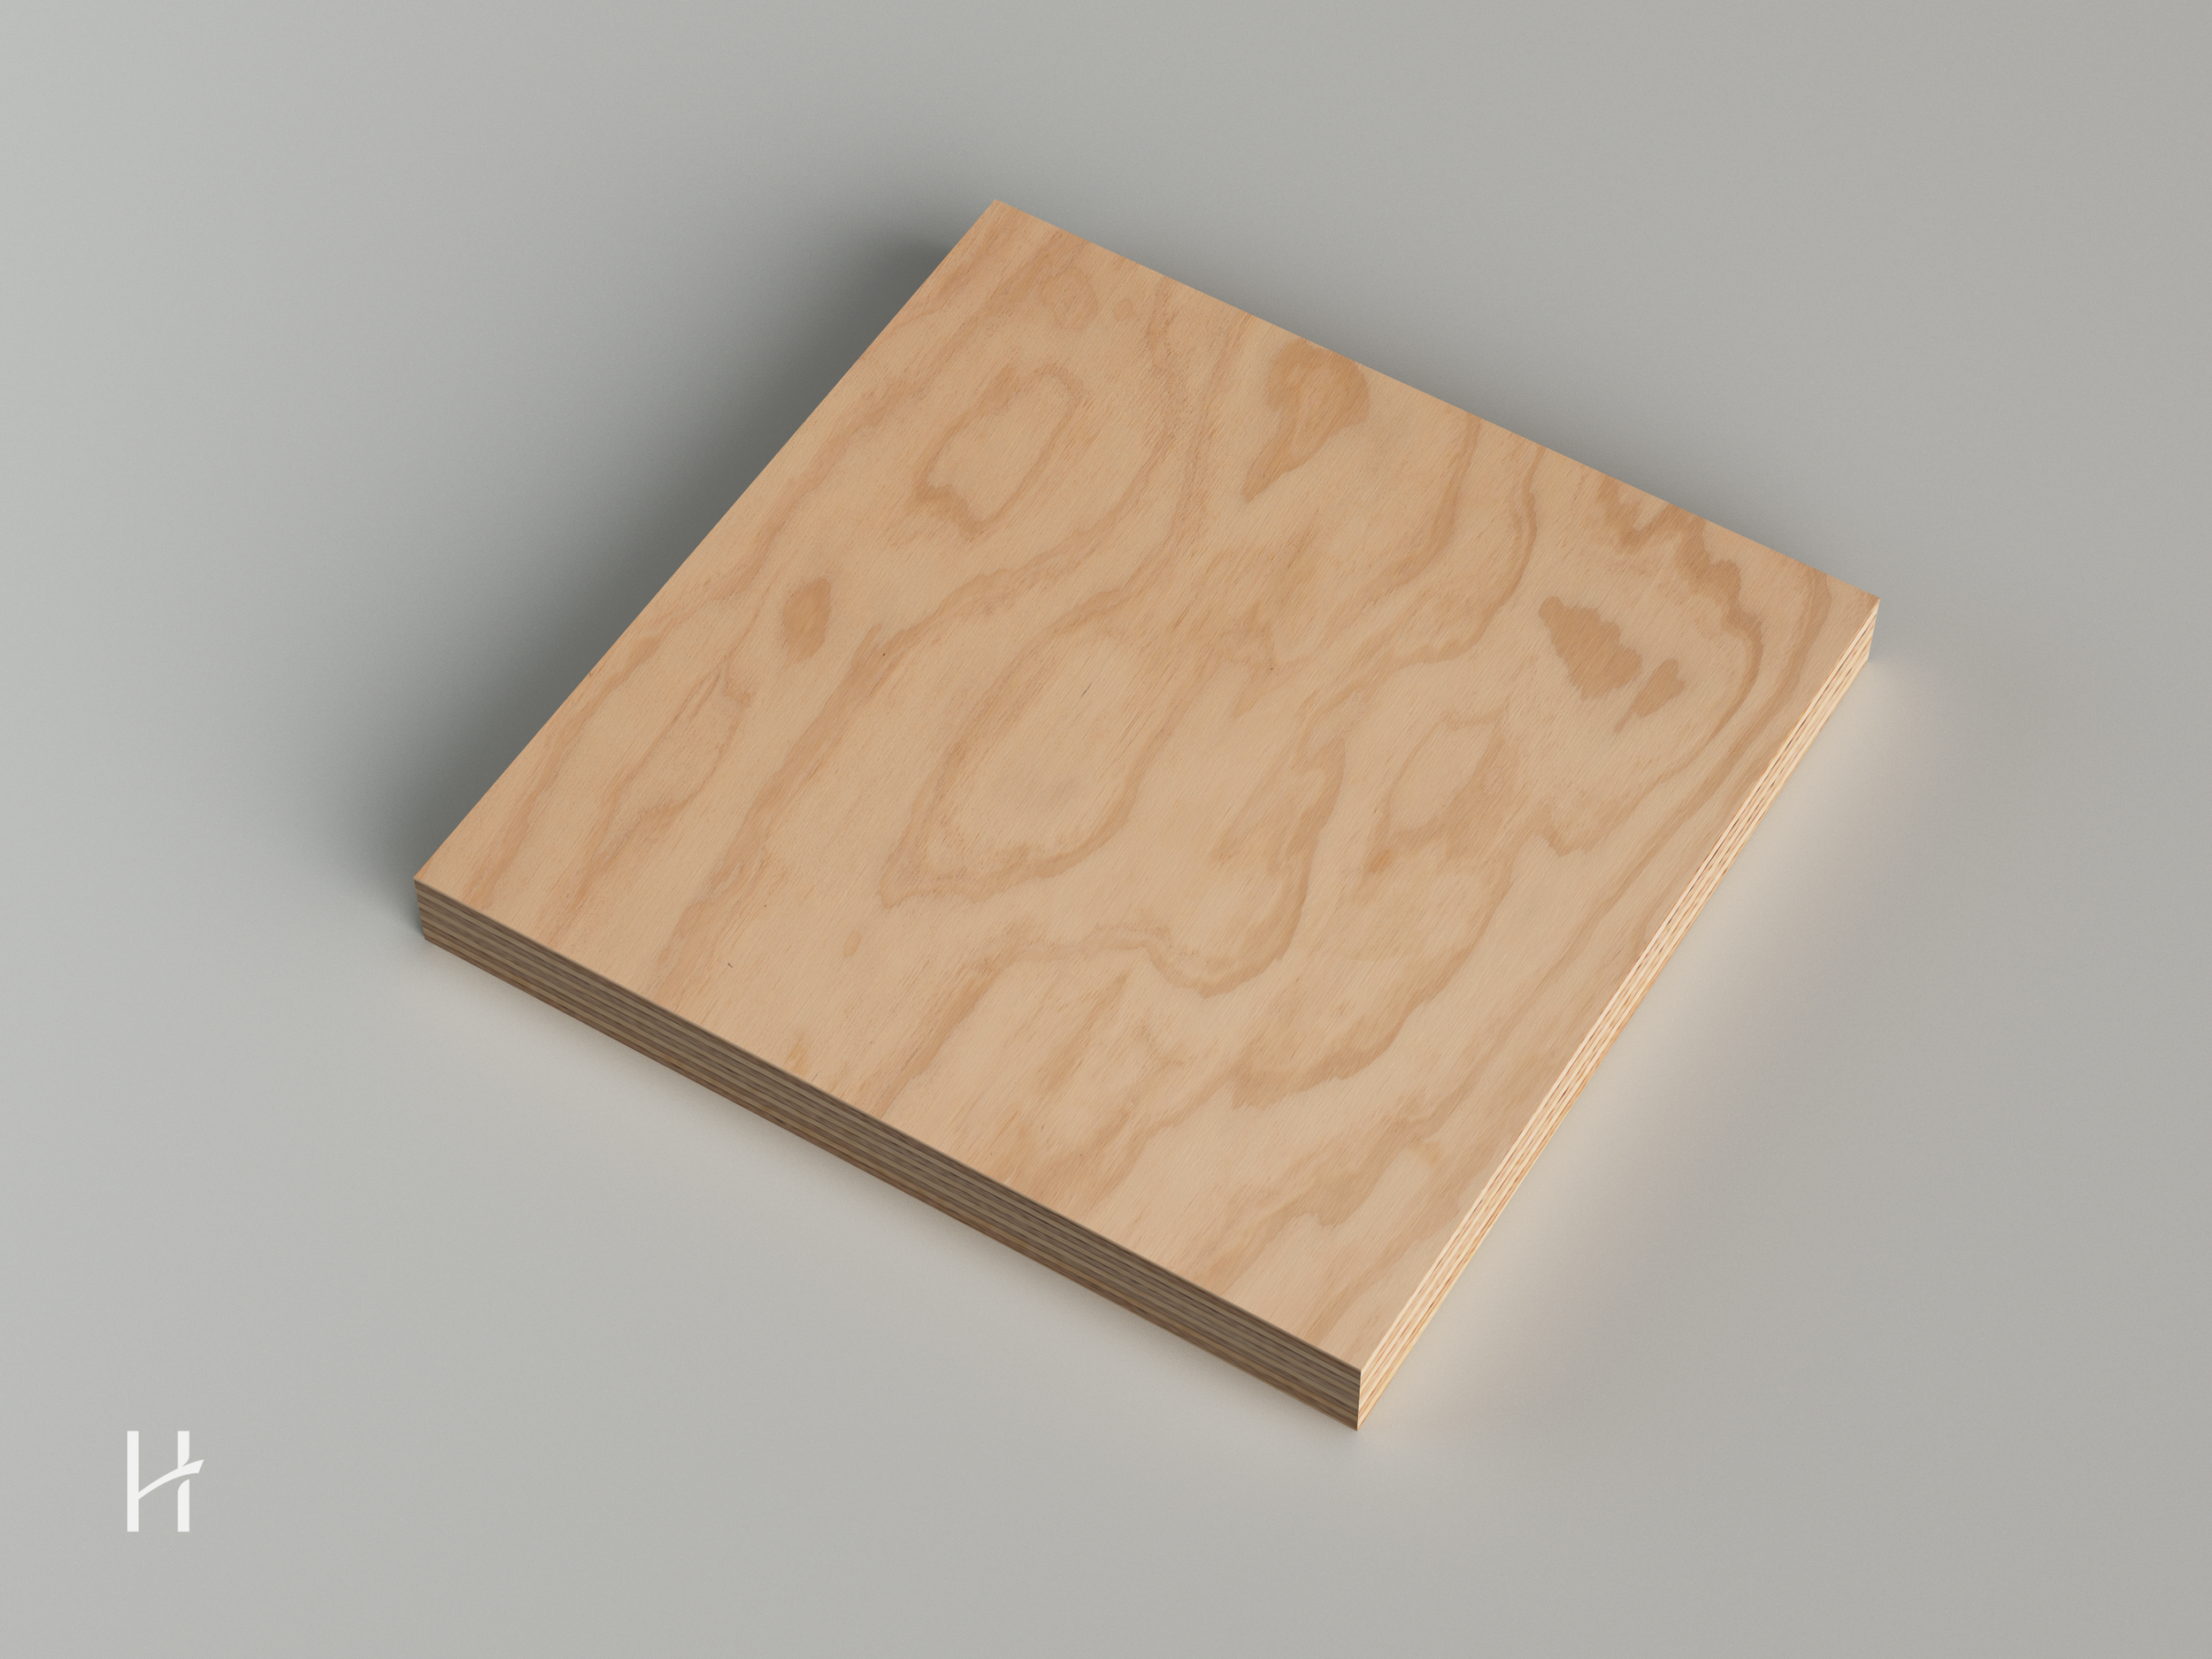 Tipos de tableros de madera para muebles a medida — Himera Estudio